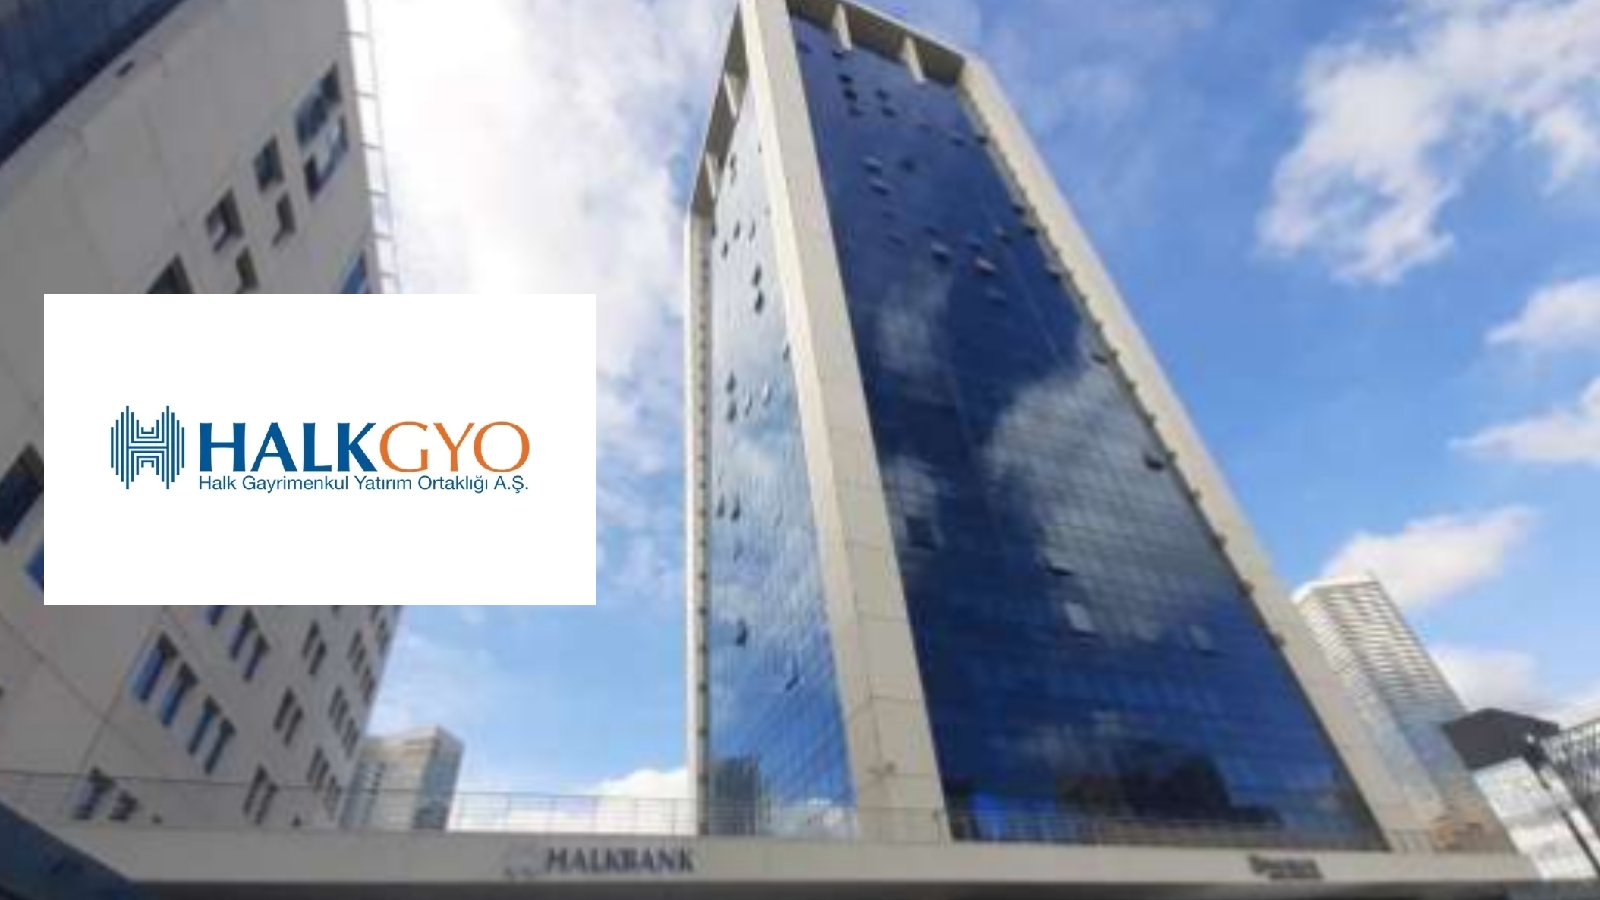 Halk GYO Ataşehir Finans Kule'sinin 2023 değeri 2.5 milyar TL'yi aştı!